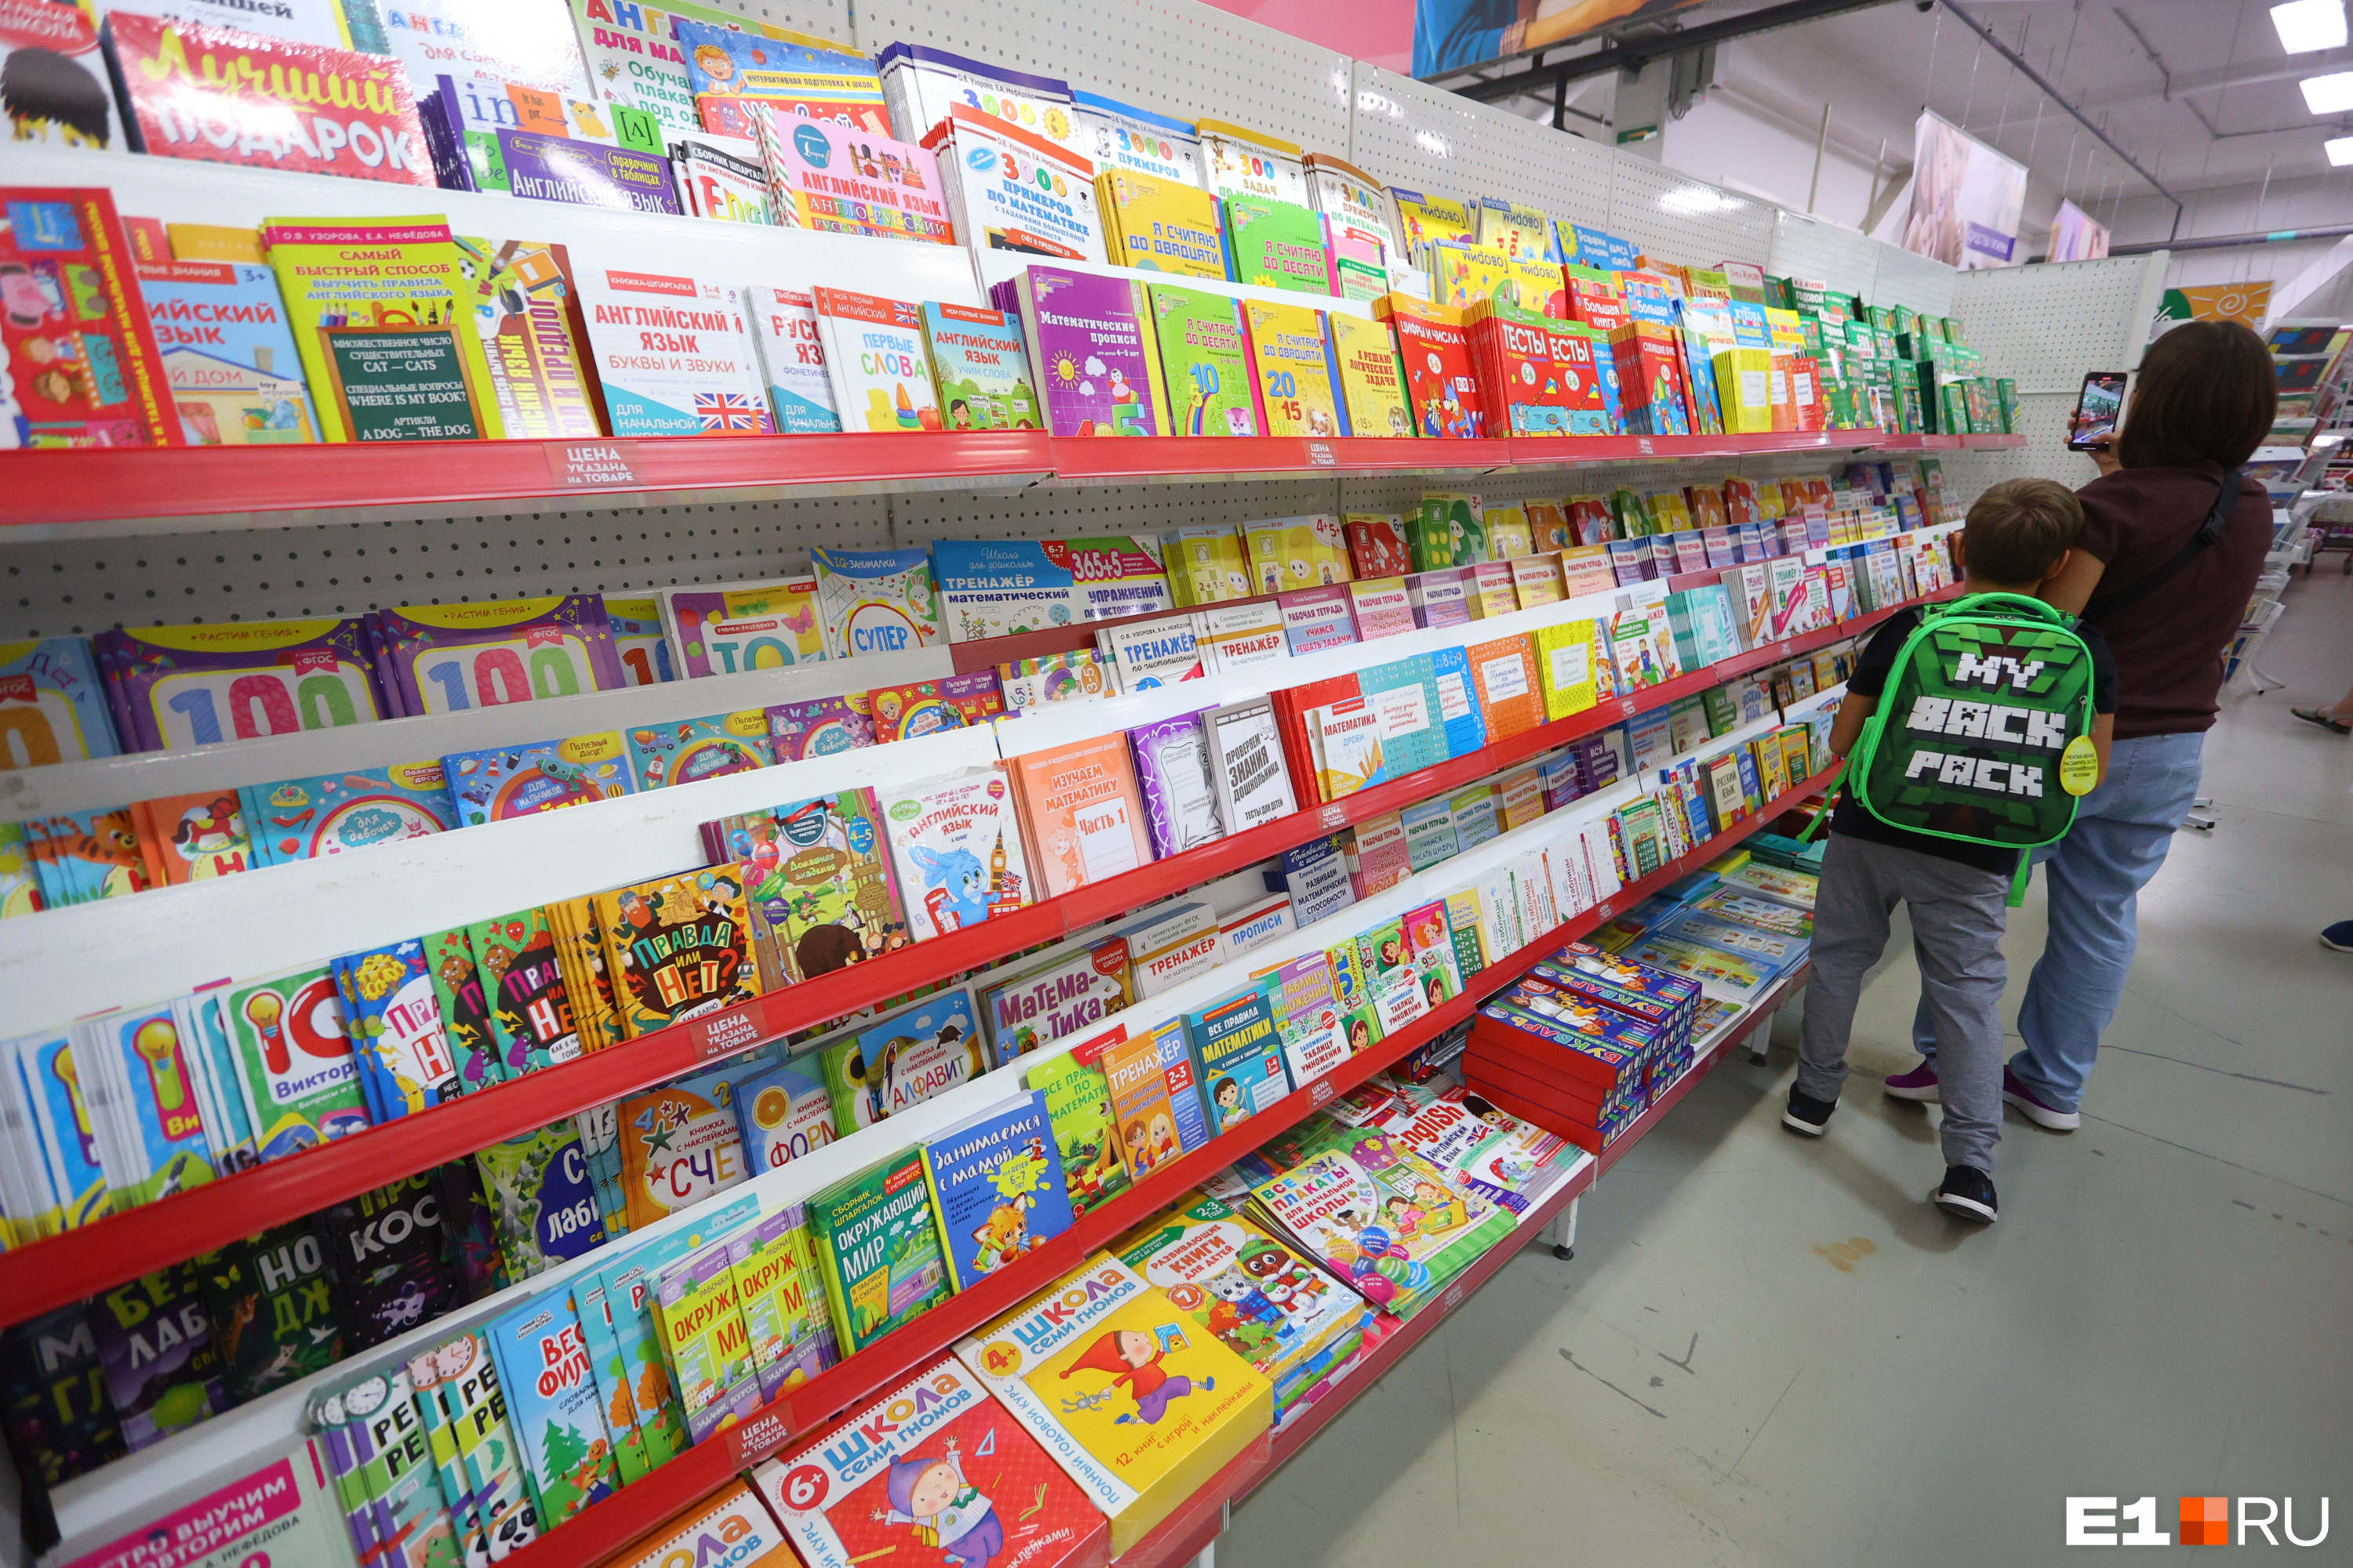 С детских книг спрос строгий: низкопробную бумагу для их изготовления использовать нельзя